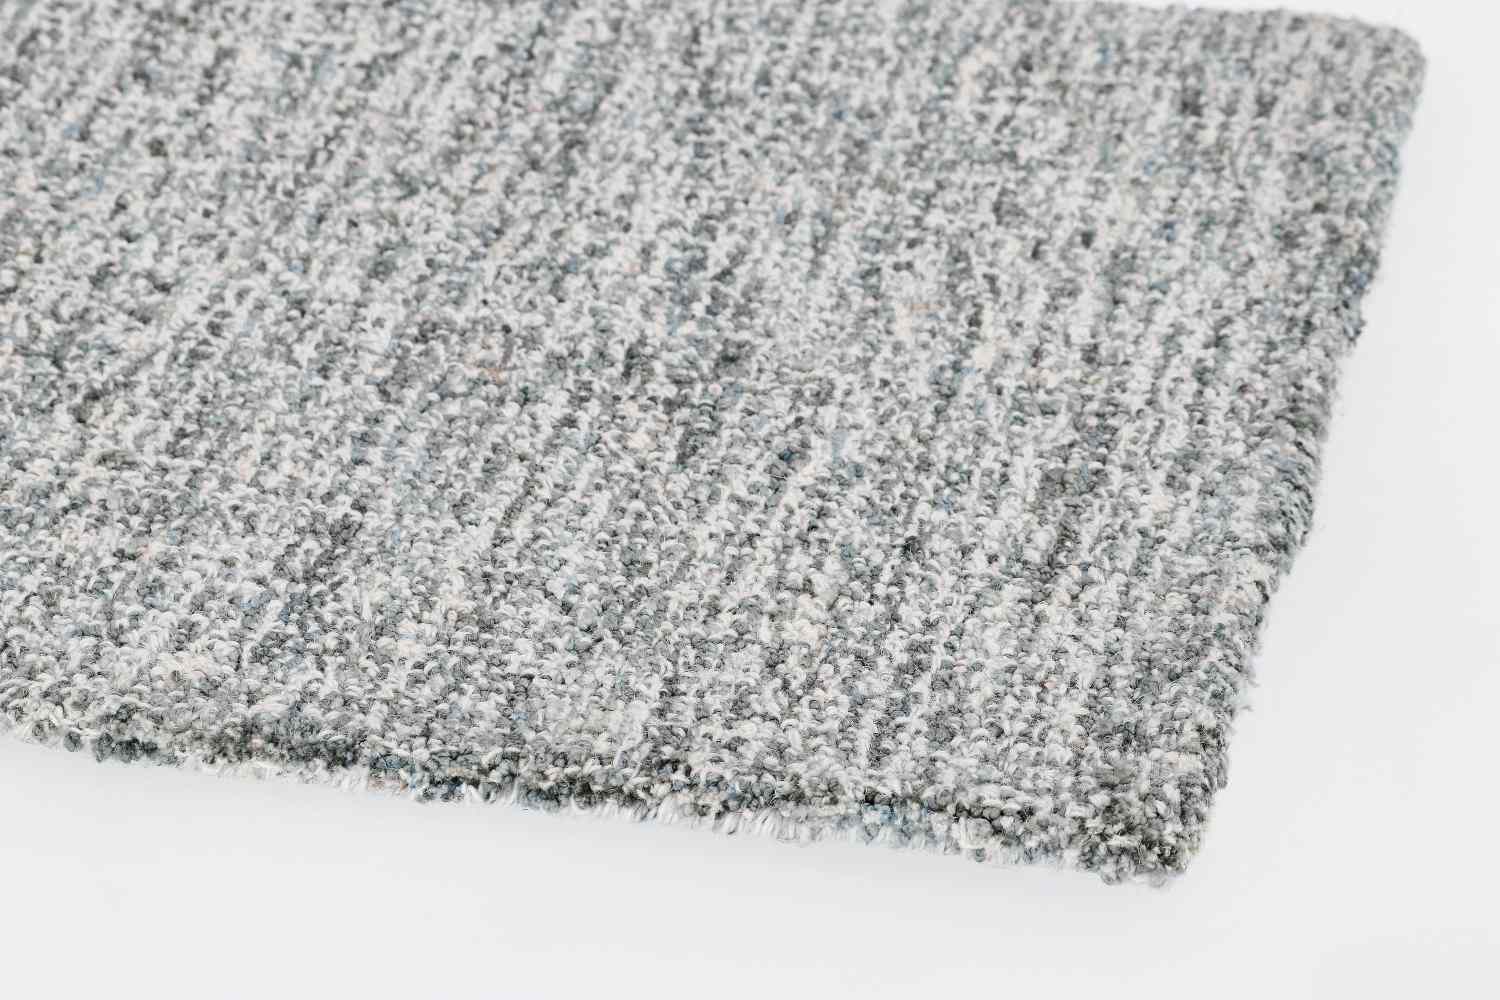 Der Teppich Hansi überzeugt mit seinem klassischen Design. Gefertigt wurde die Vorderseite aus 70% Polyester und 30% Wolle, die Rückseite ist aus Baumwolle. Der Teppich besitzt eine grauen Farbton und die Maße von 160x230 cm.